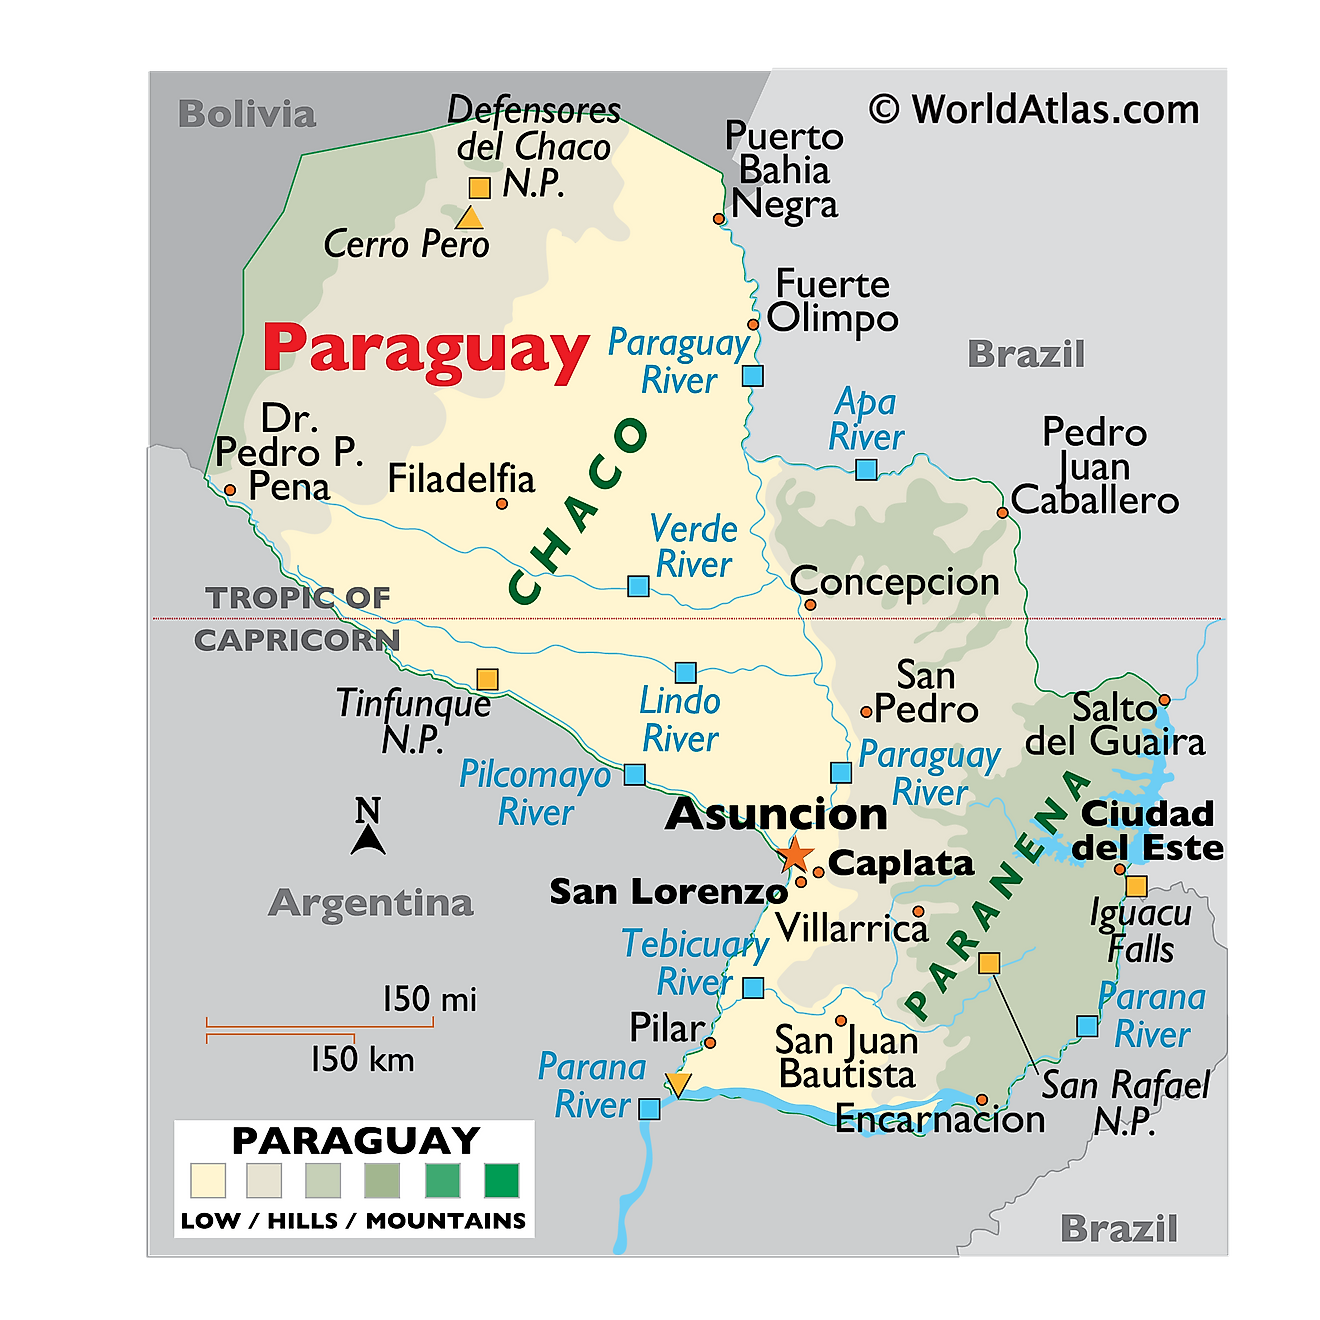 Mapa físico de Paraguay que muestra el relieve, los principales ríos, las regiones geográficas, las áreas protegidas, los asentamientos importantes, los países limítrofes, etc.